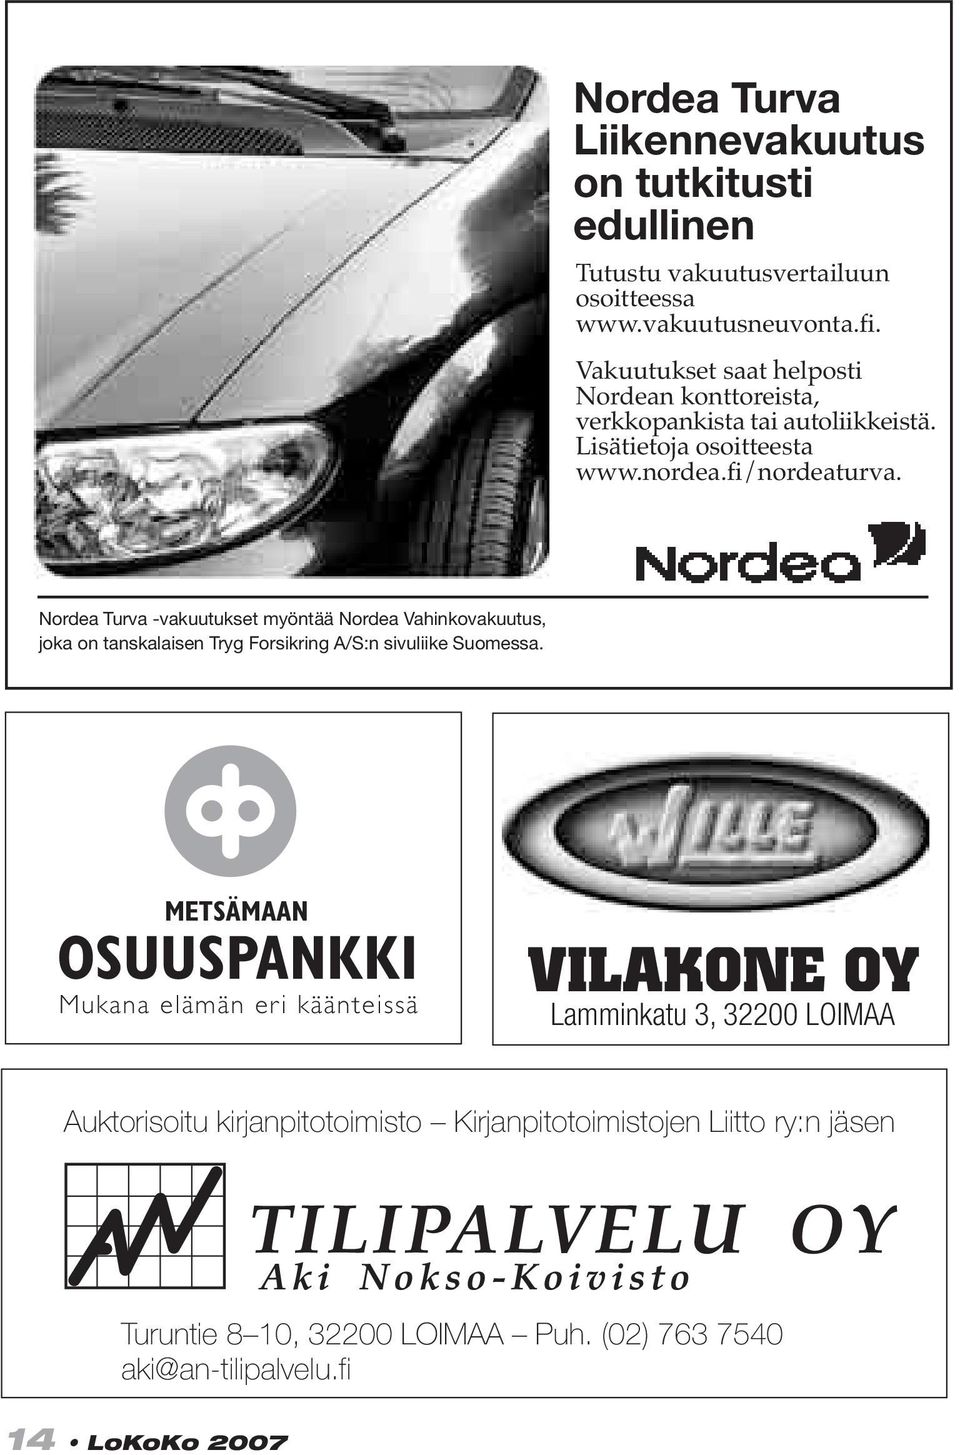 Nordea Turva -vakuutukset myöntää Nordea Vahinkovakuutus, joka on tanskalaisen Tryg Forsikring A/S:n sivuliike Suomessa.